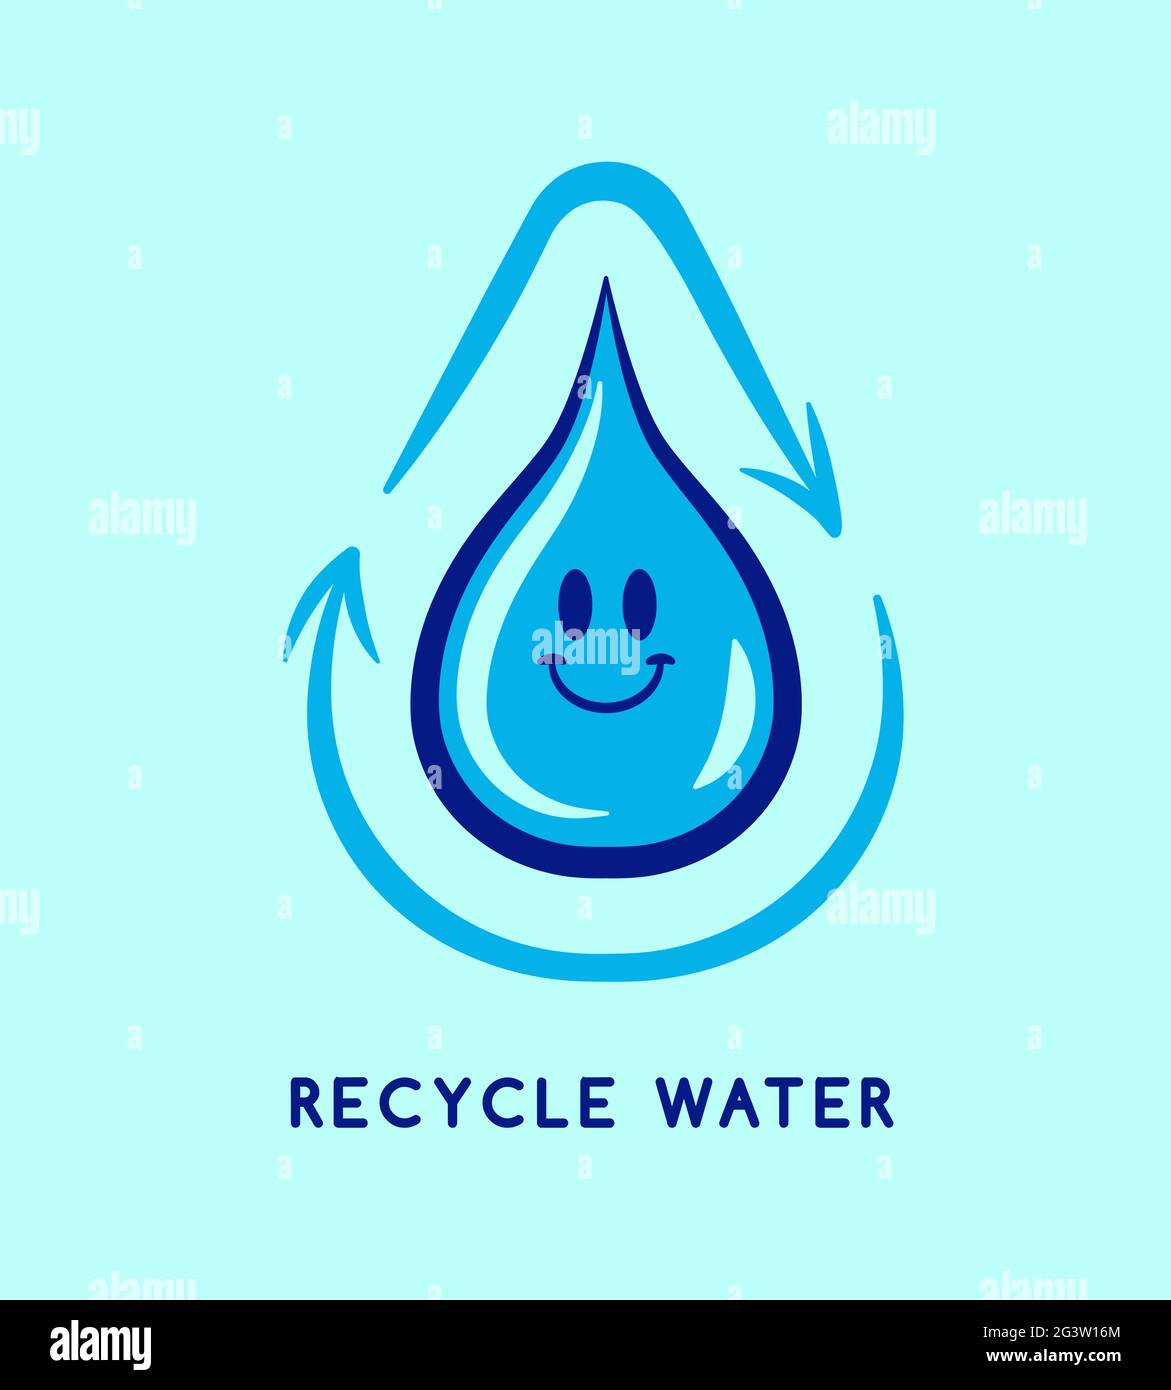 Recyclingwasser-Illustrationskonzept für umweltfreundliche Umweltschutzkampagne. Design des Kreislaufes für die Wiederverwendung von Hausmüll. Lustige Retro Cartoon blau flüssigen Tropfen cha Stock Vektor